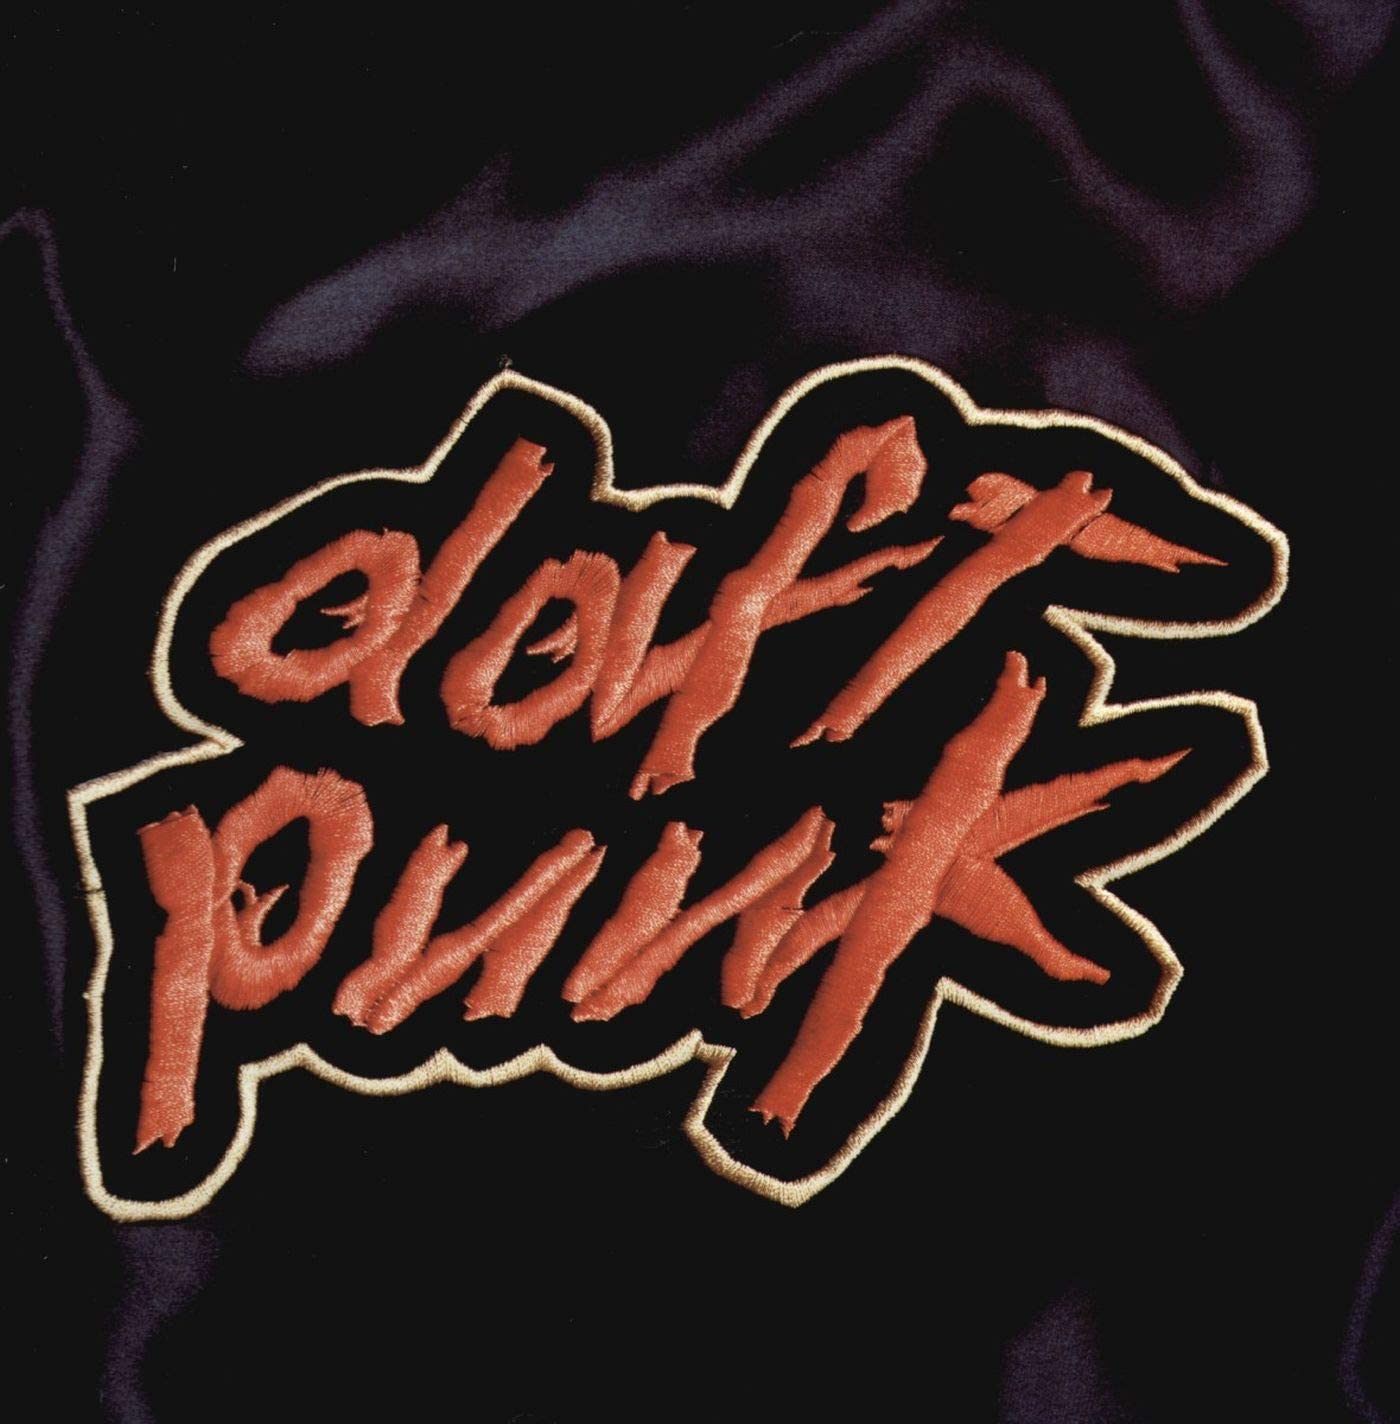 Homework, Vinili e Album Daft Punk